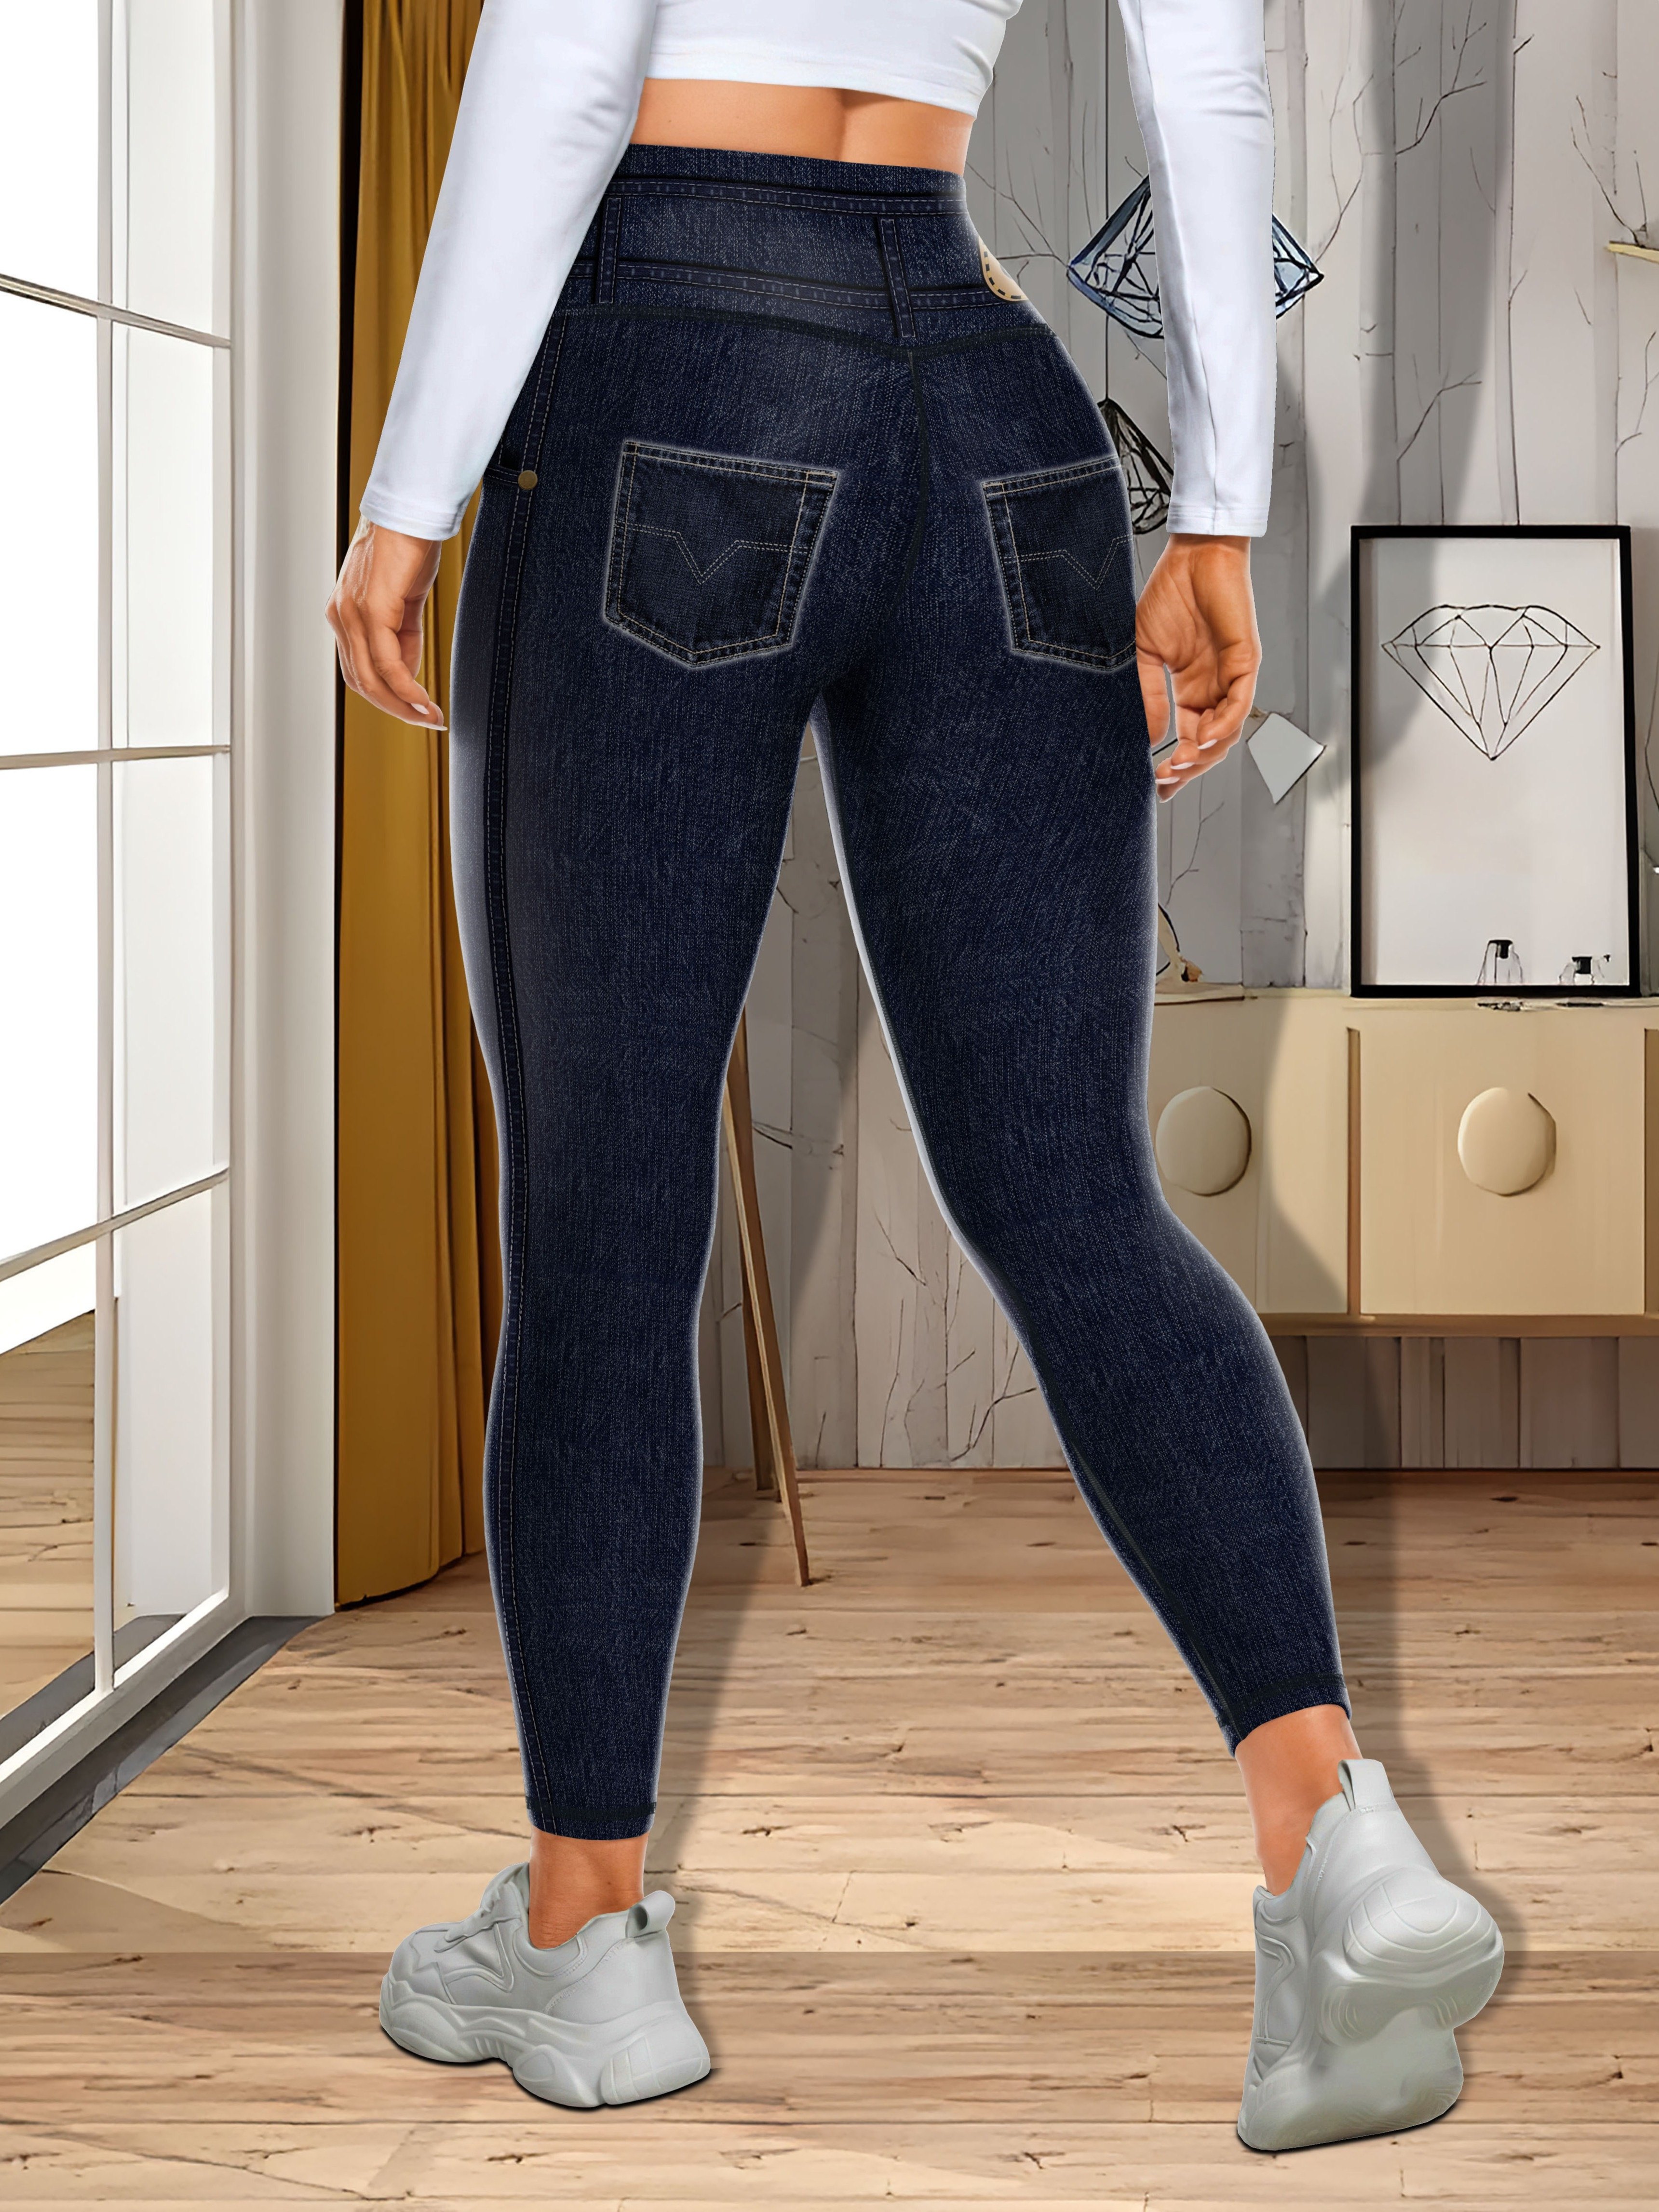 Women Stretchy Faux Denim Jeans Leggings High Waist Tummy Control